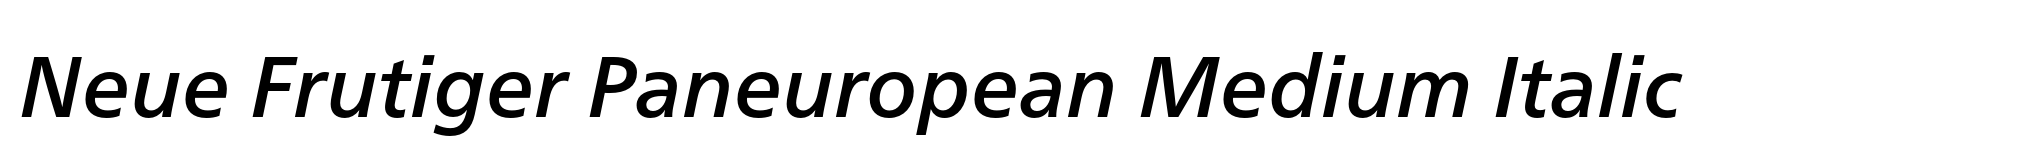 Neue Frutiger Paneuropean Medium Italic image